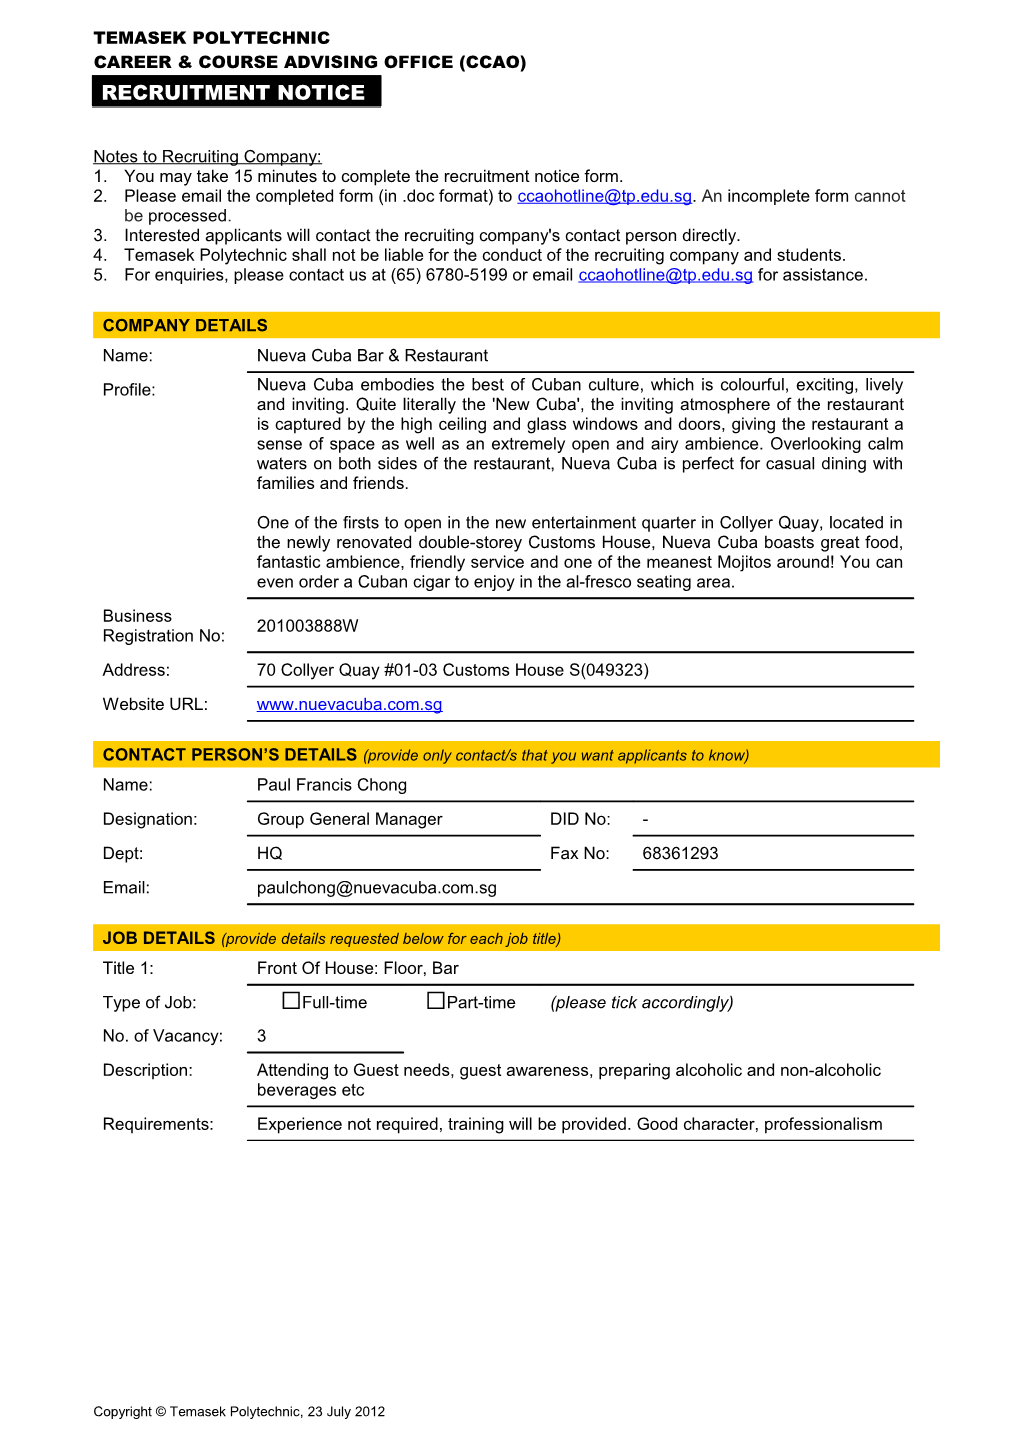 CCAO Recruitment Notice 2010